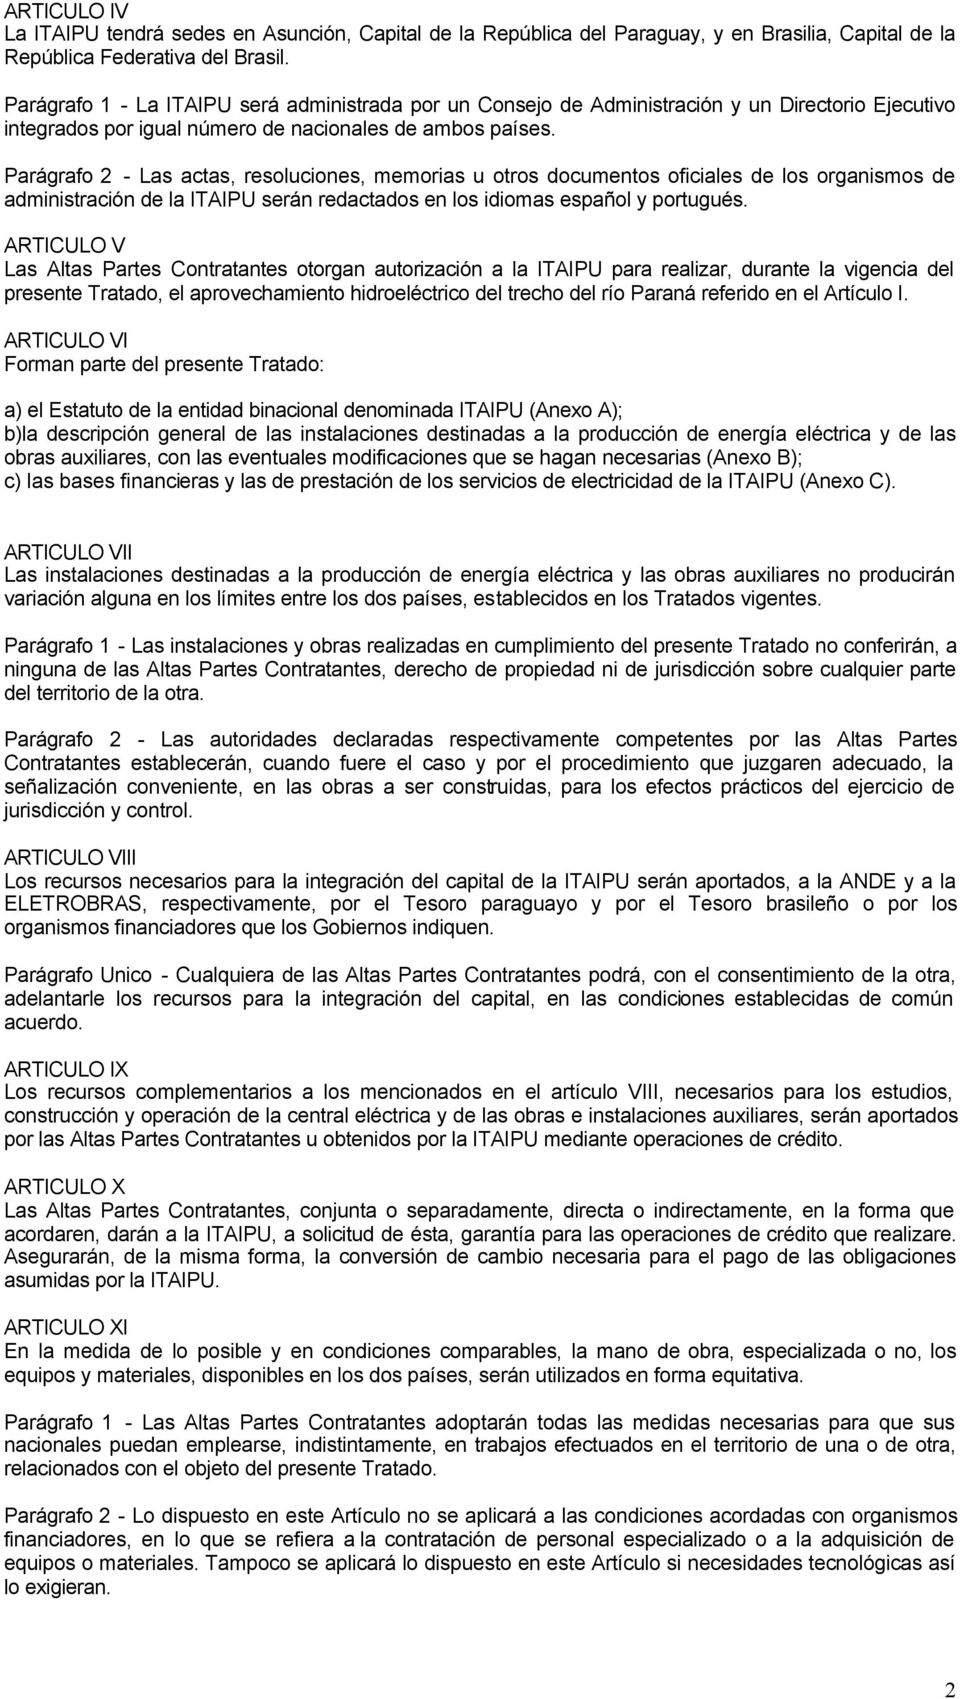 Parágrafo 2 - Las actas, resoluciones, memorias u otros documentos oficiales de los organismos de administración de la ITAIPU serán redactados en los idiomas español y portugués.